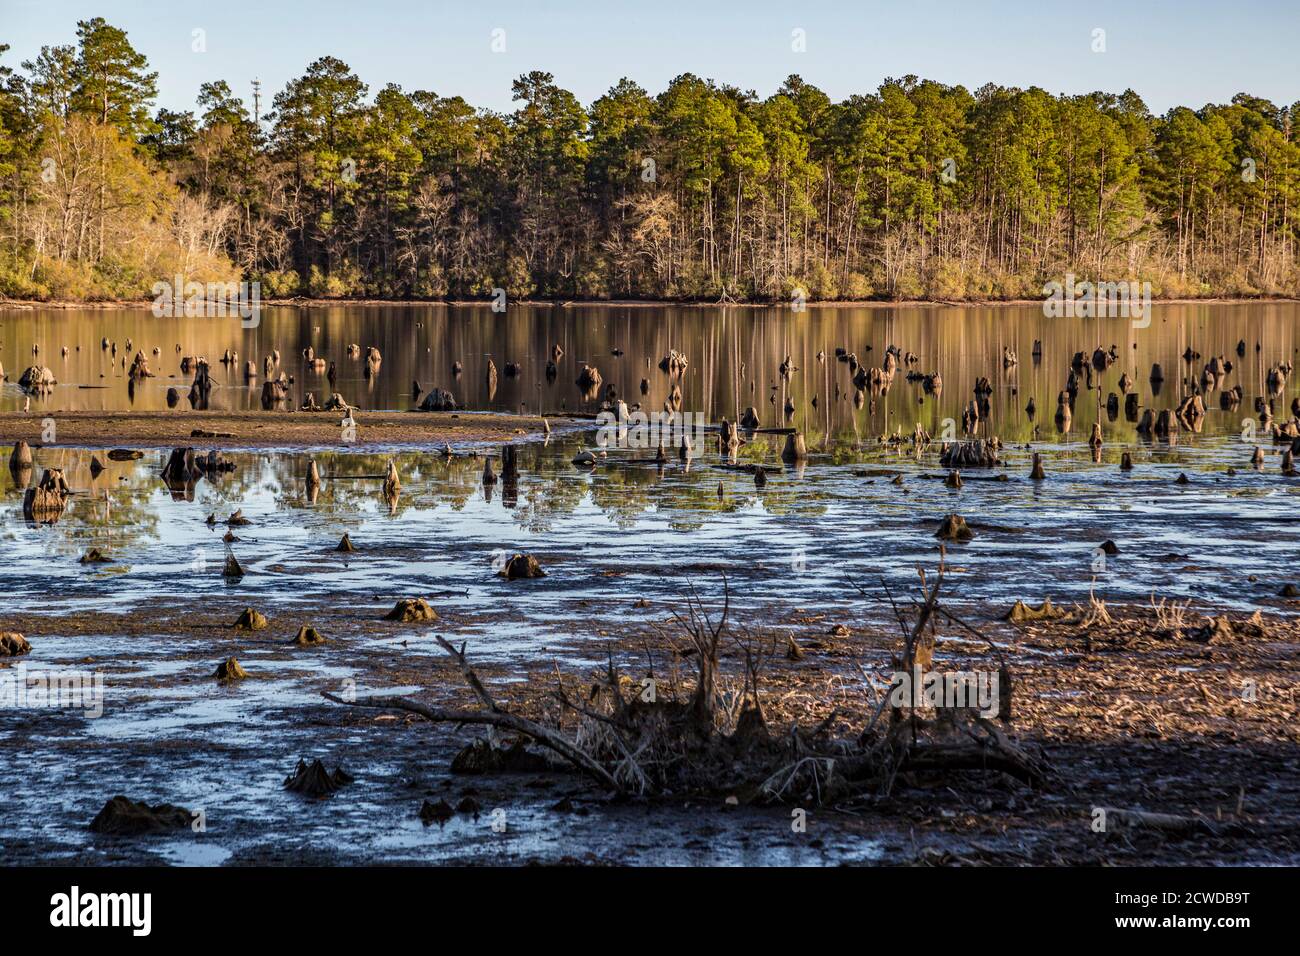 Les souches dépassent des basses eaux du lac Geiger au parc national Paul B. Johnson près de Hattiesburg, Mississippi, États-Unis Banque D'Images